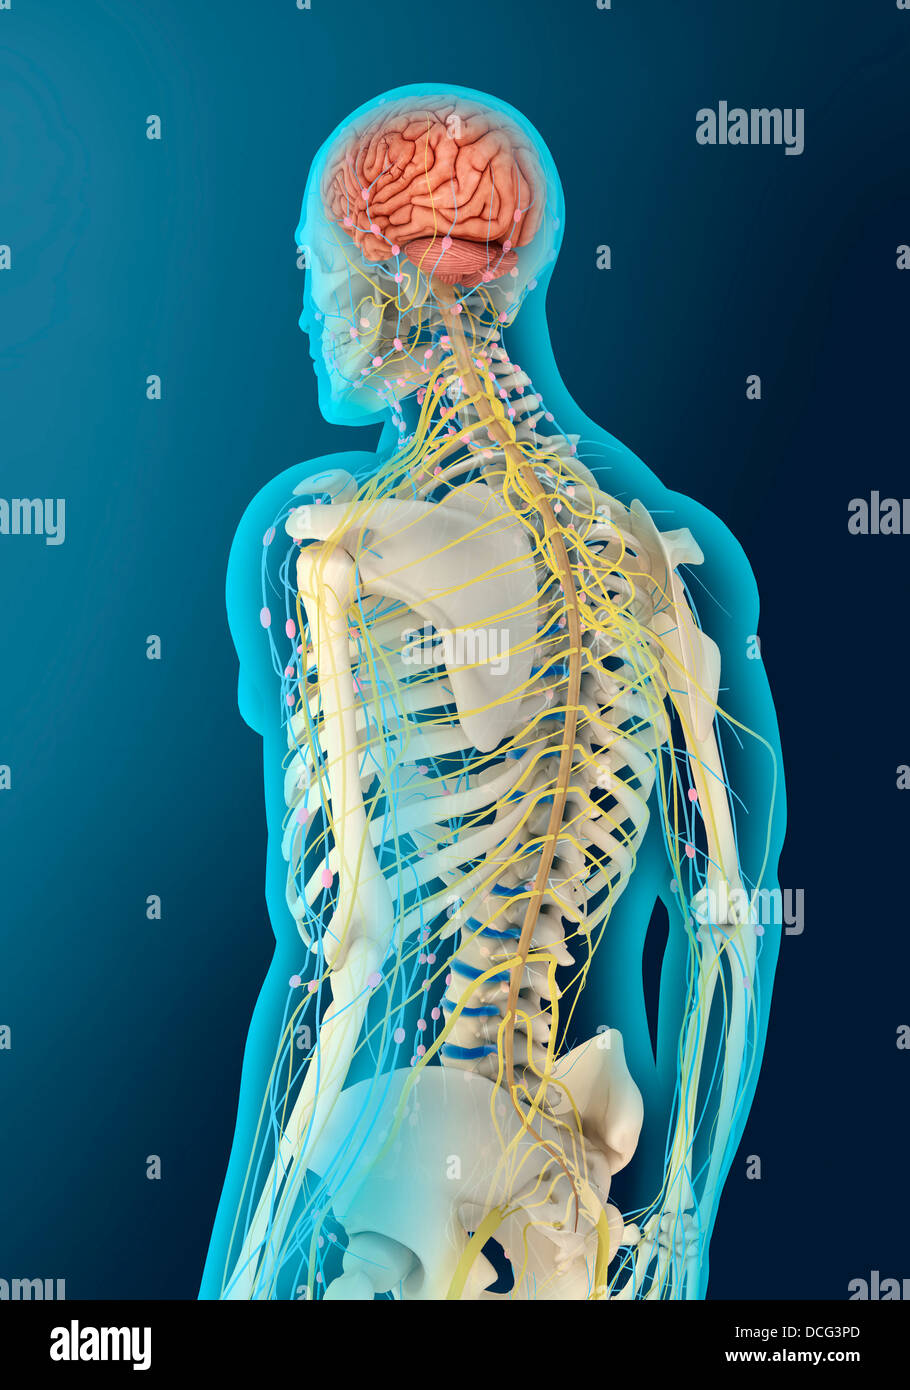 Illustrazione medica del cervello umano e stelo cerebrale, vista prospettica. Foto Stock